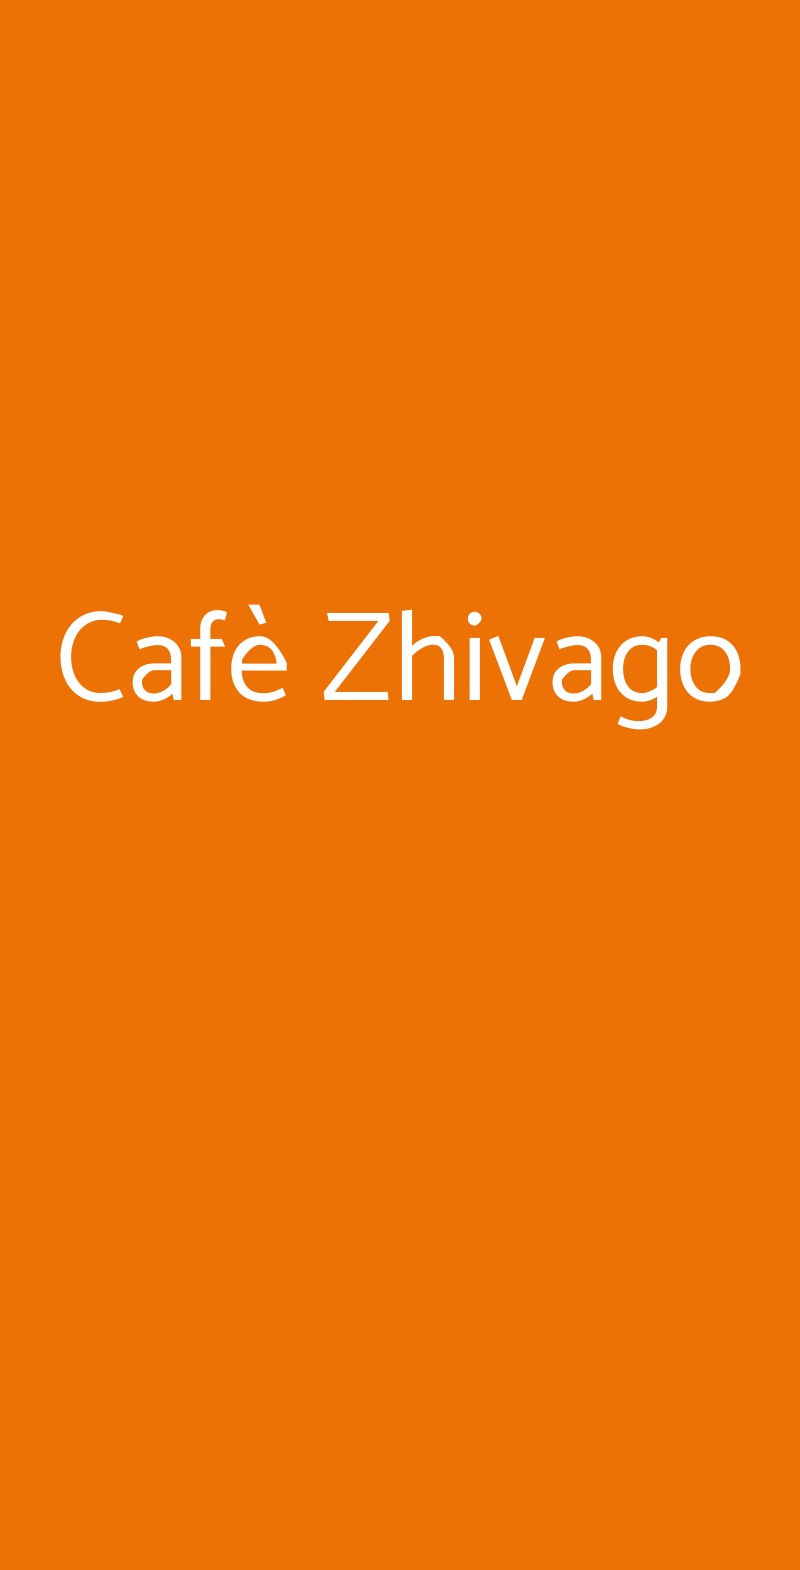 Cafè Zhivago Due Carrare menù 1 pagina